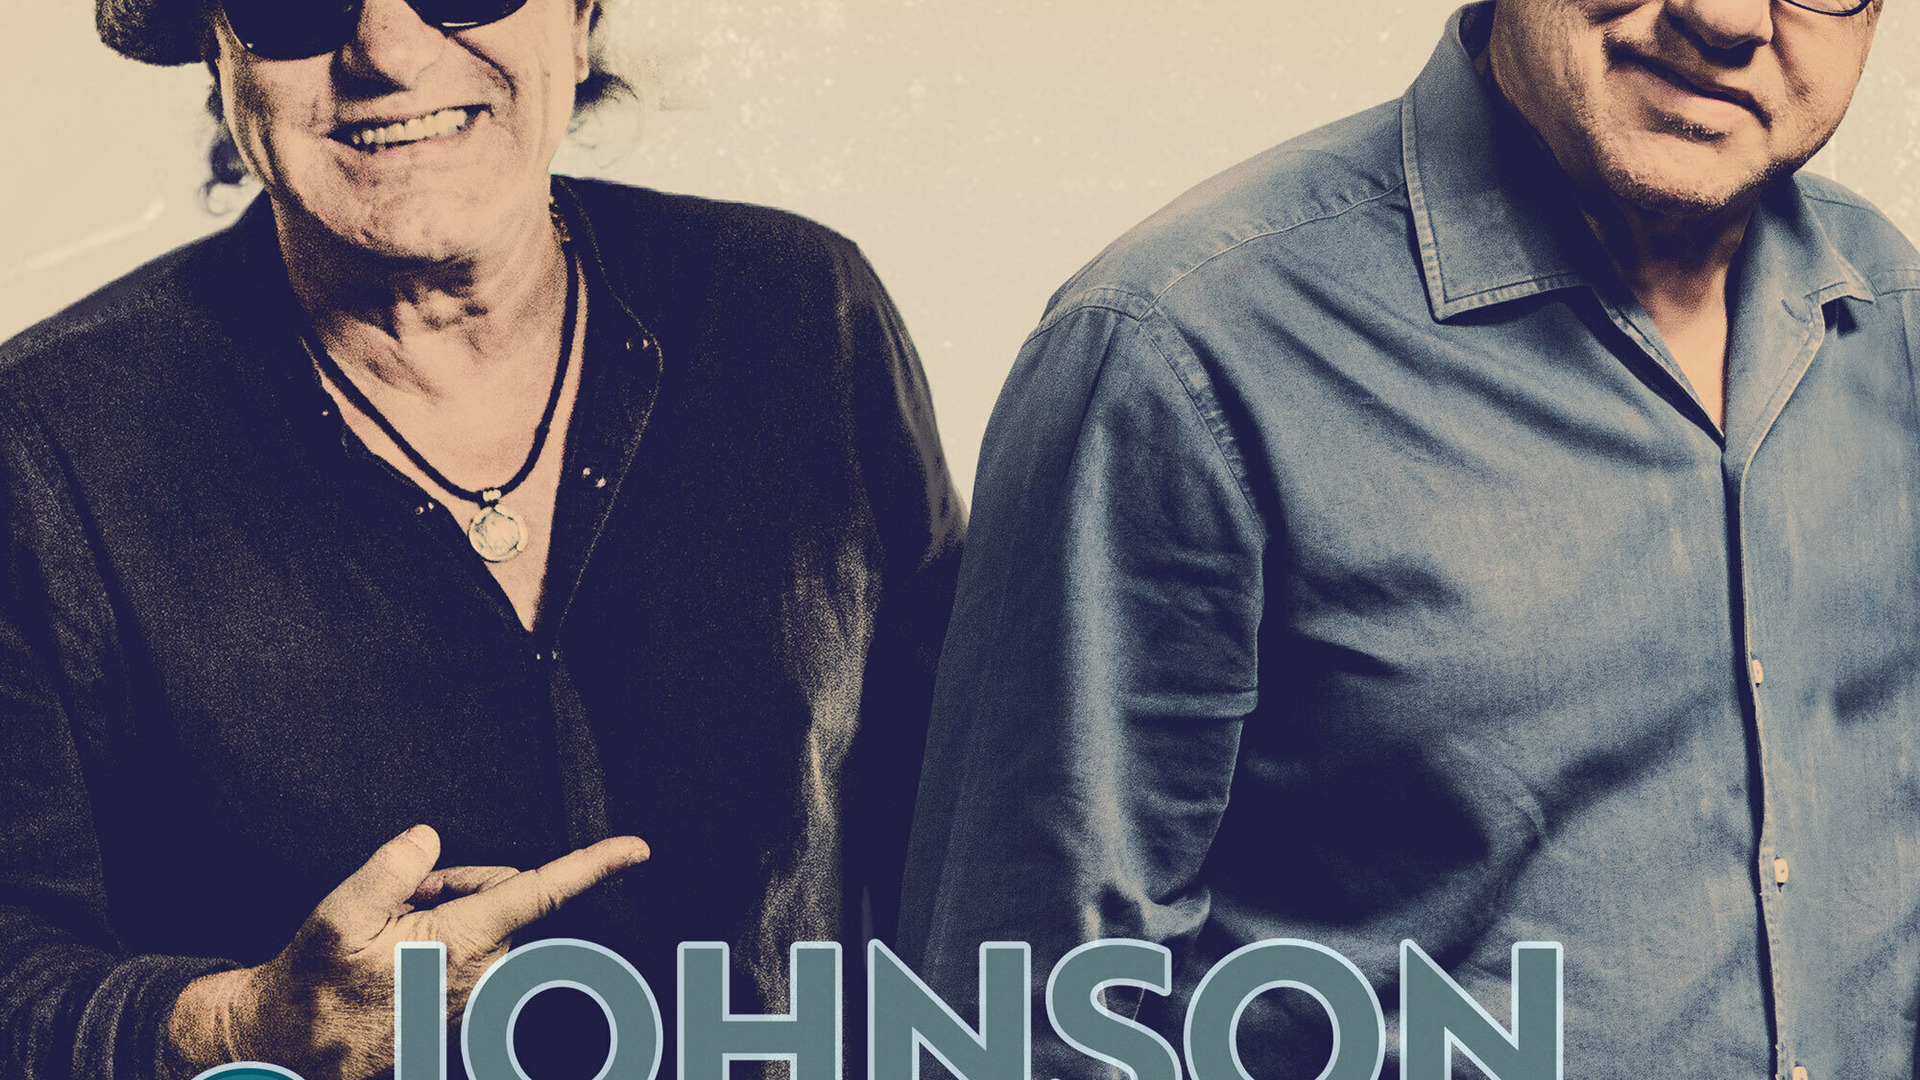 Show Johnson & Knopfler's Music Legends